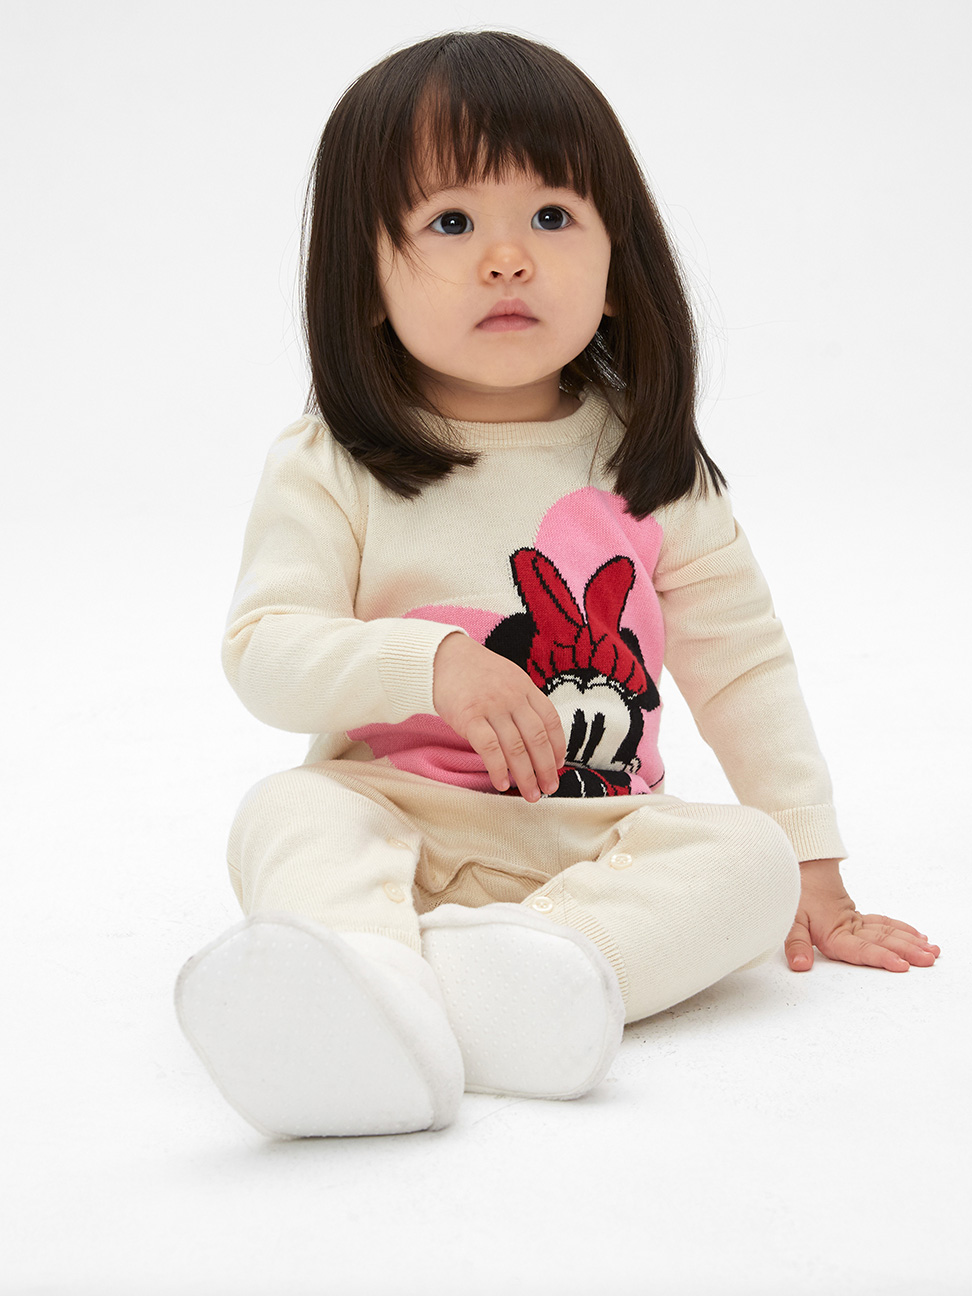 嬰兒裝|Gap x Disney迪士尼聯名  米妮棉質舒適長袖針織包屁衣-米白色